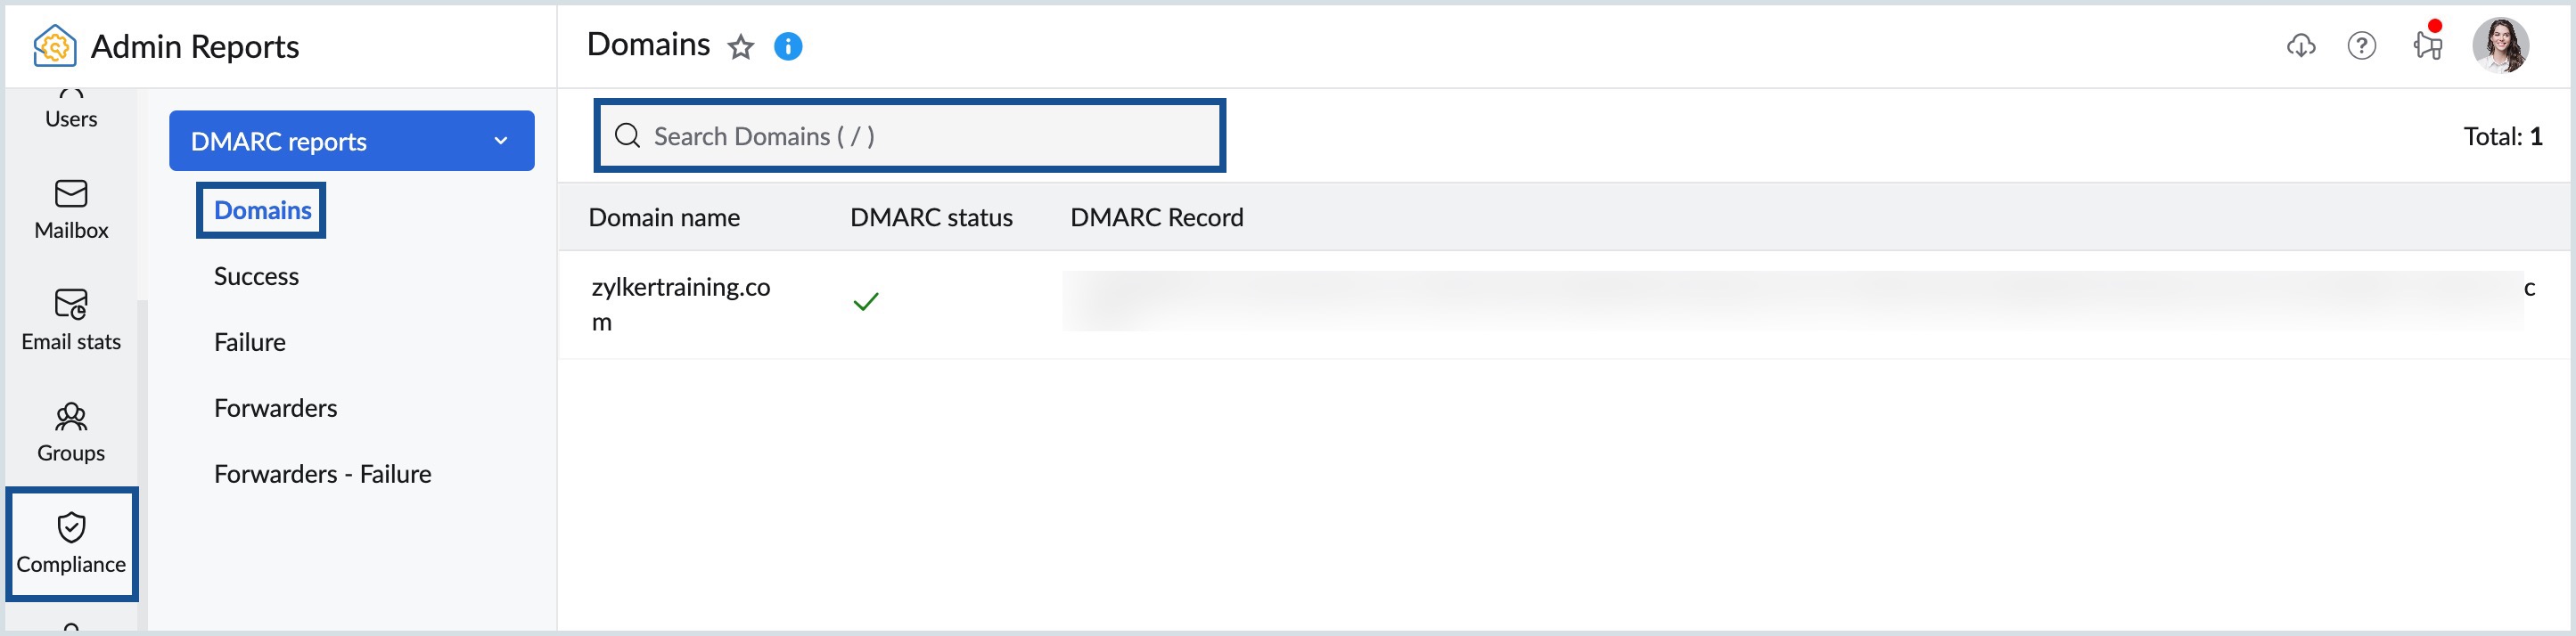 DMARC Domains report